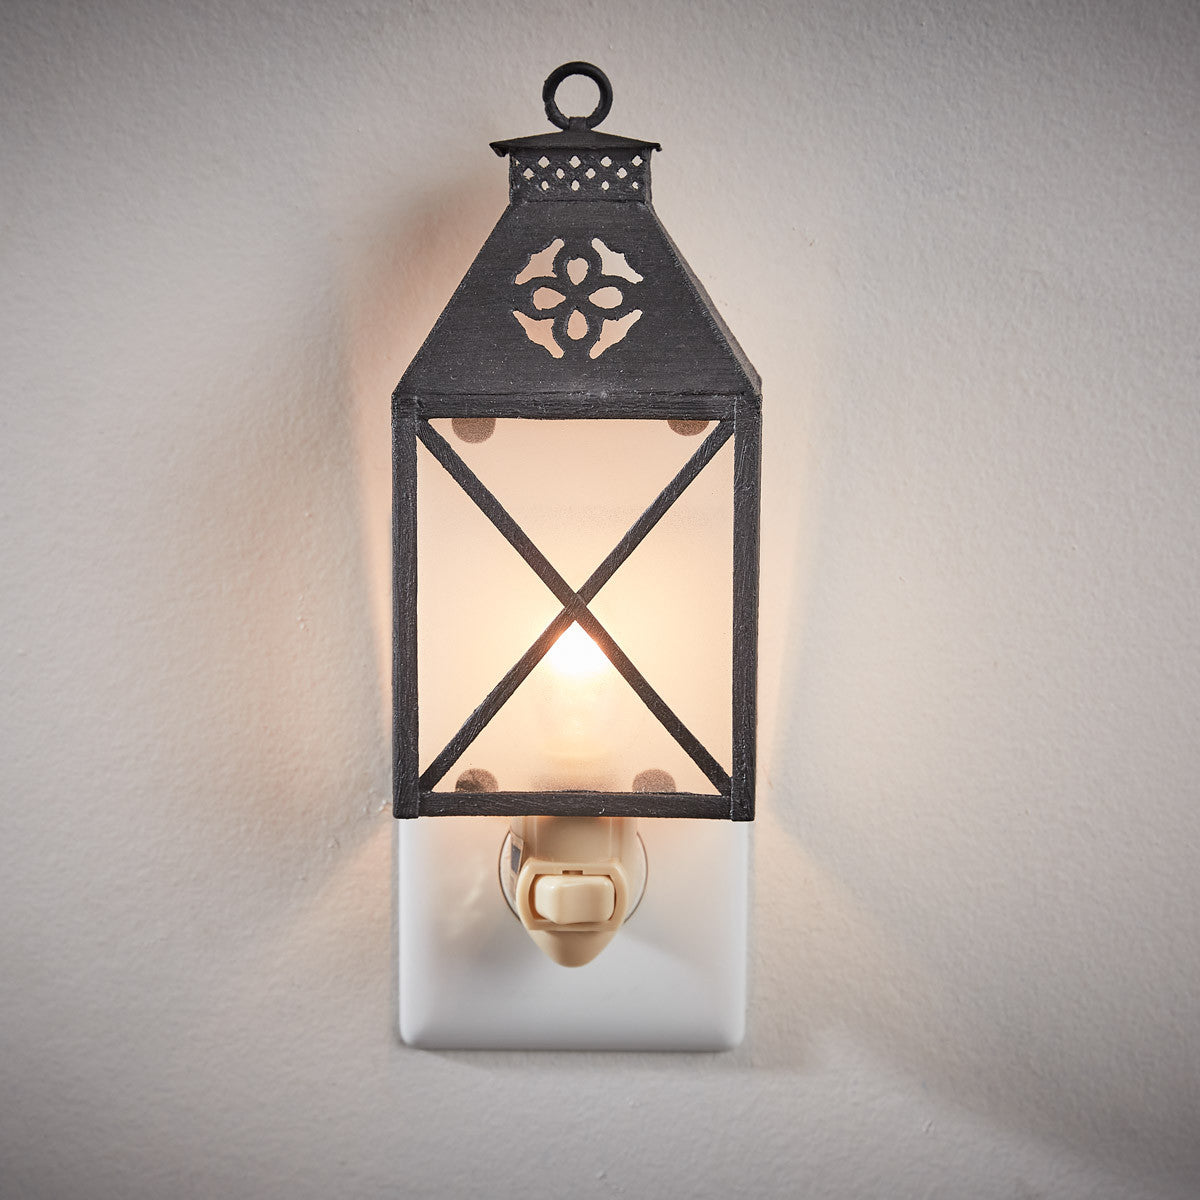 Folk Art Lantern Night Light - Park Designs